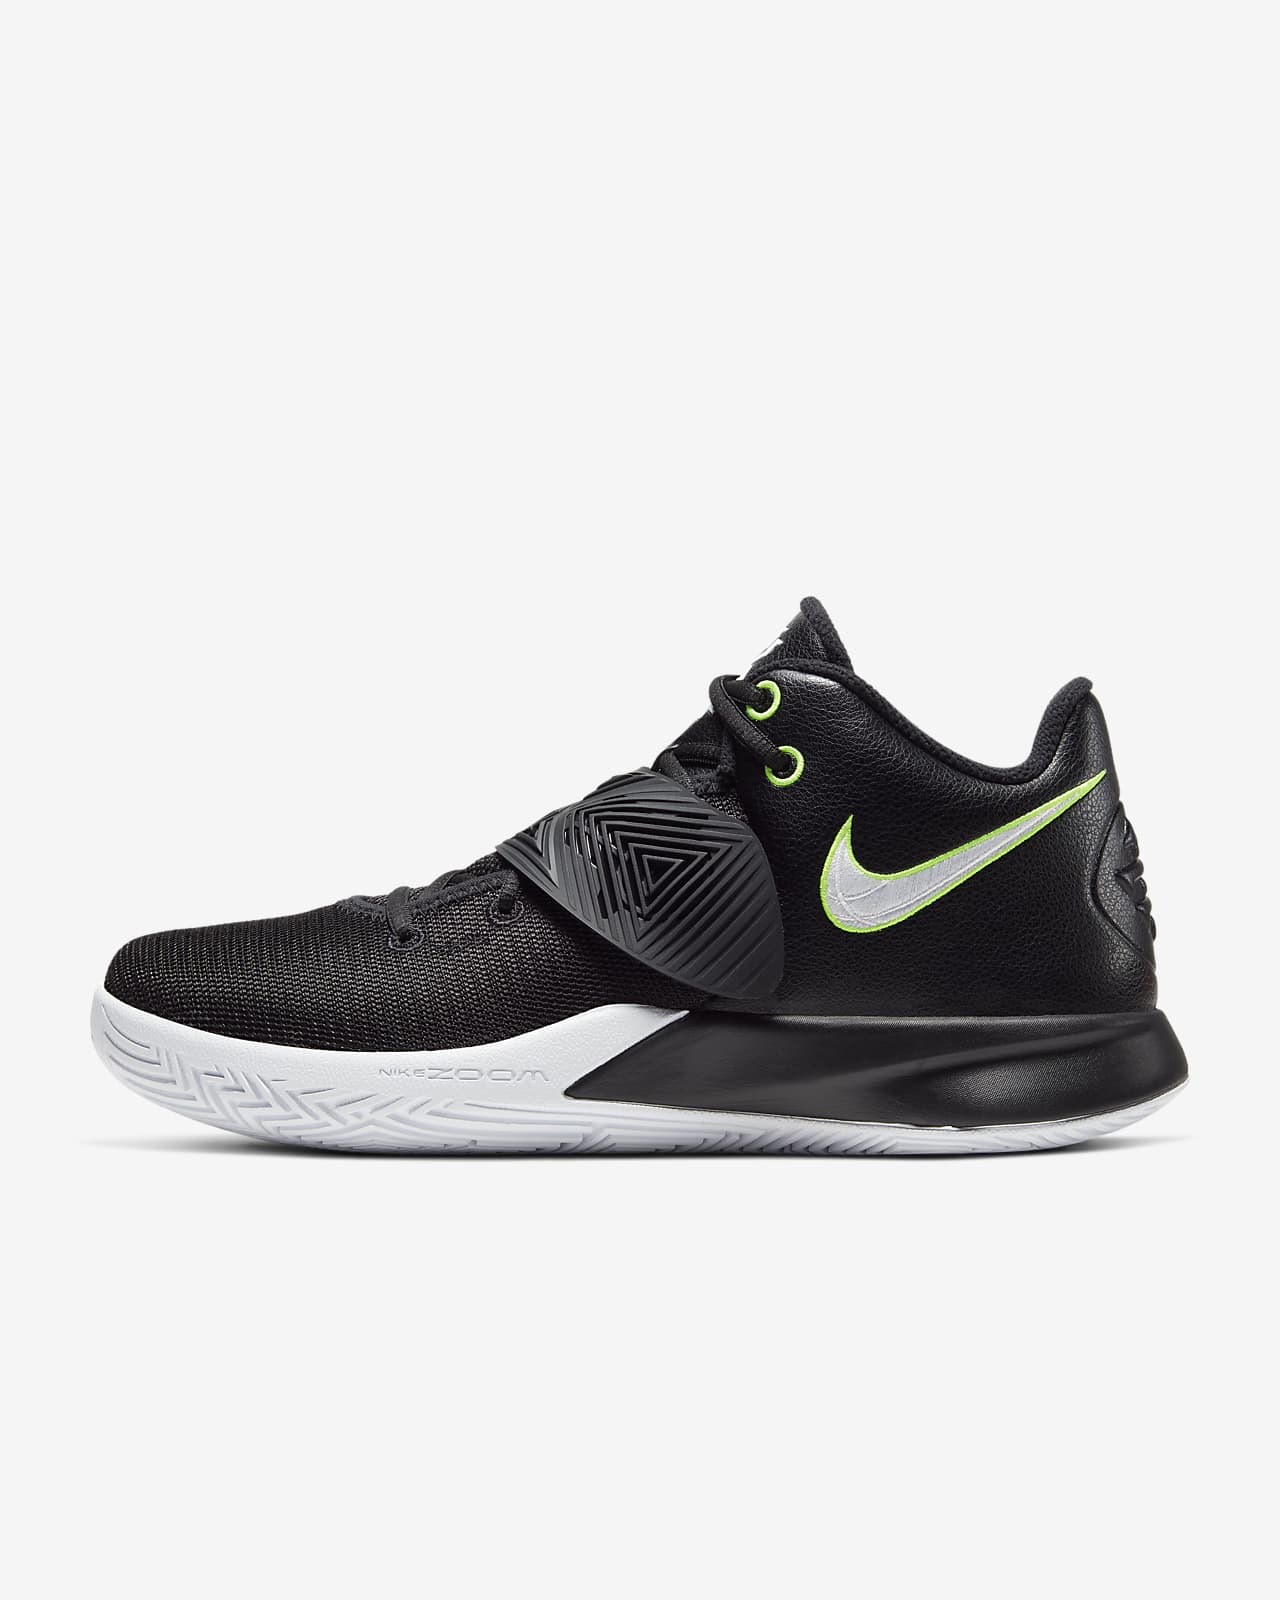 Kyrie Flytrap 3 Basketball Shoe. Nike IL